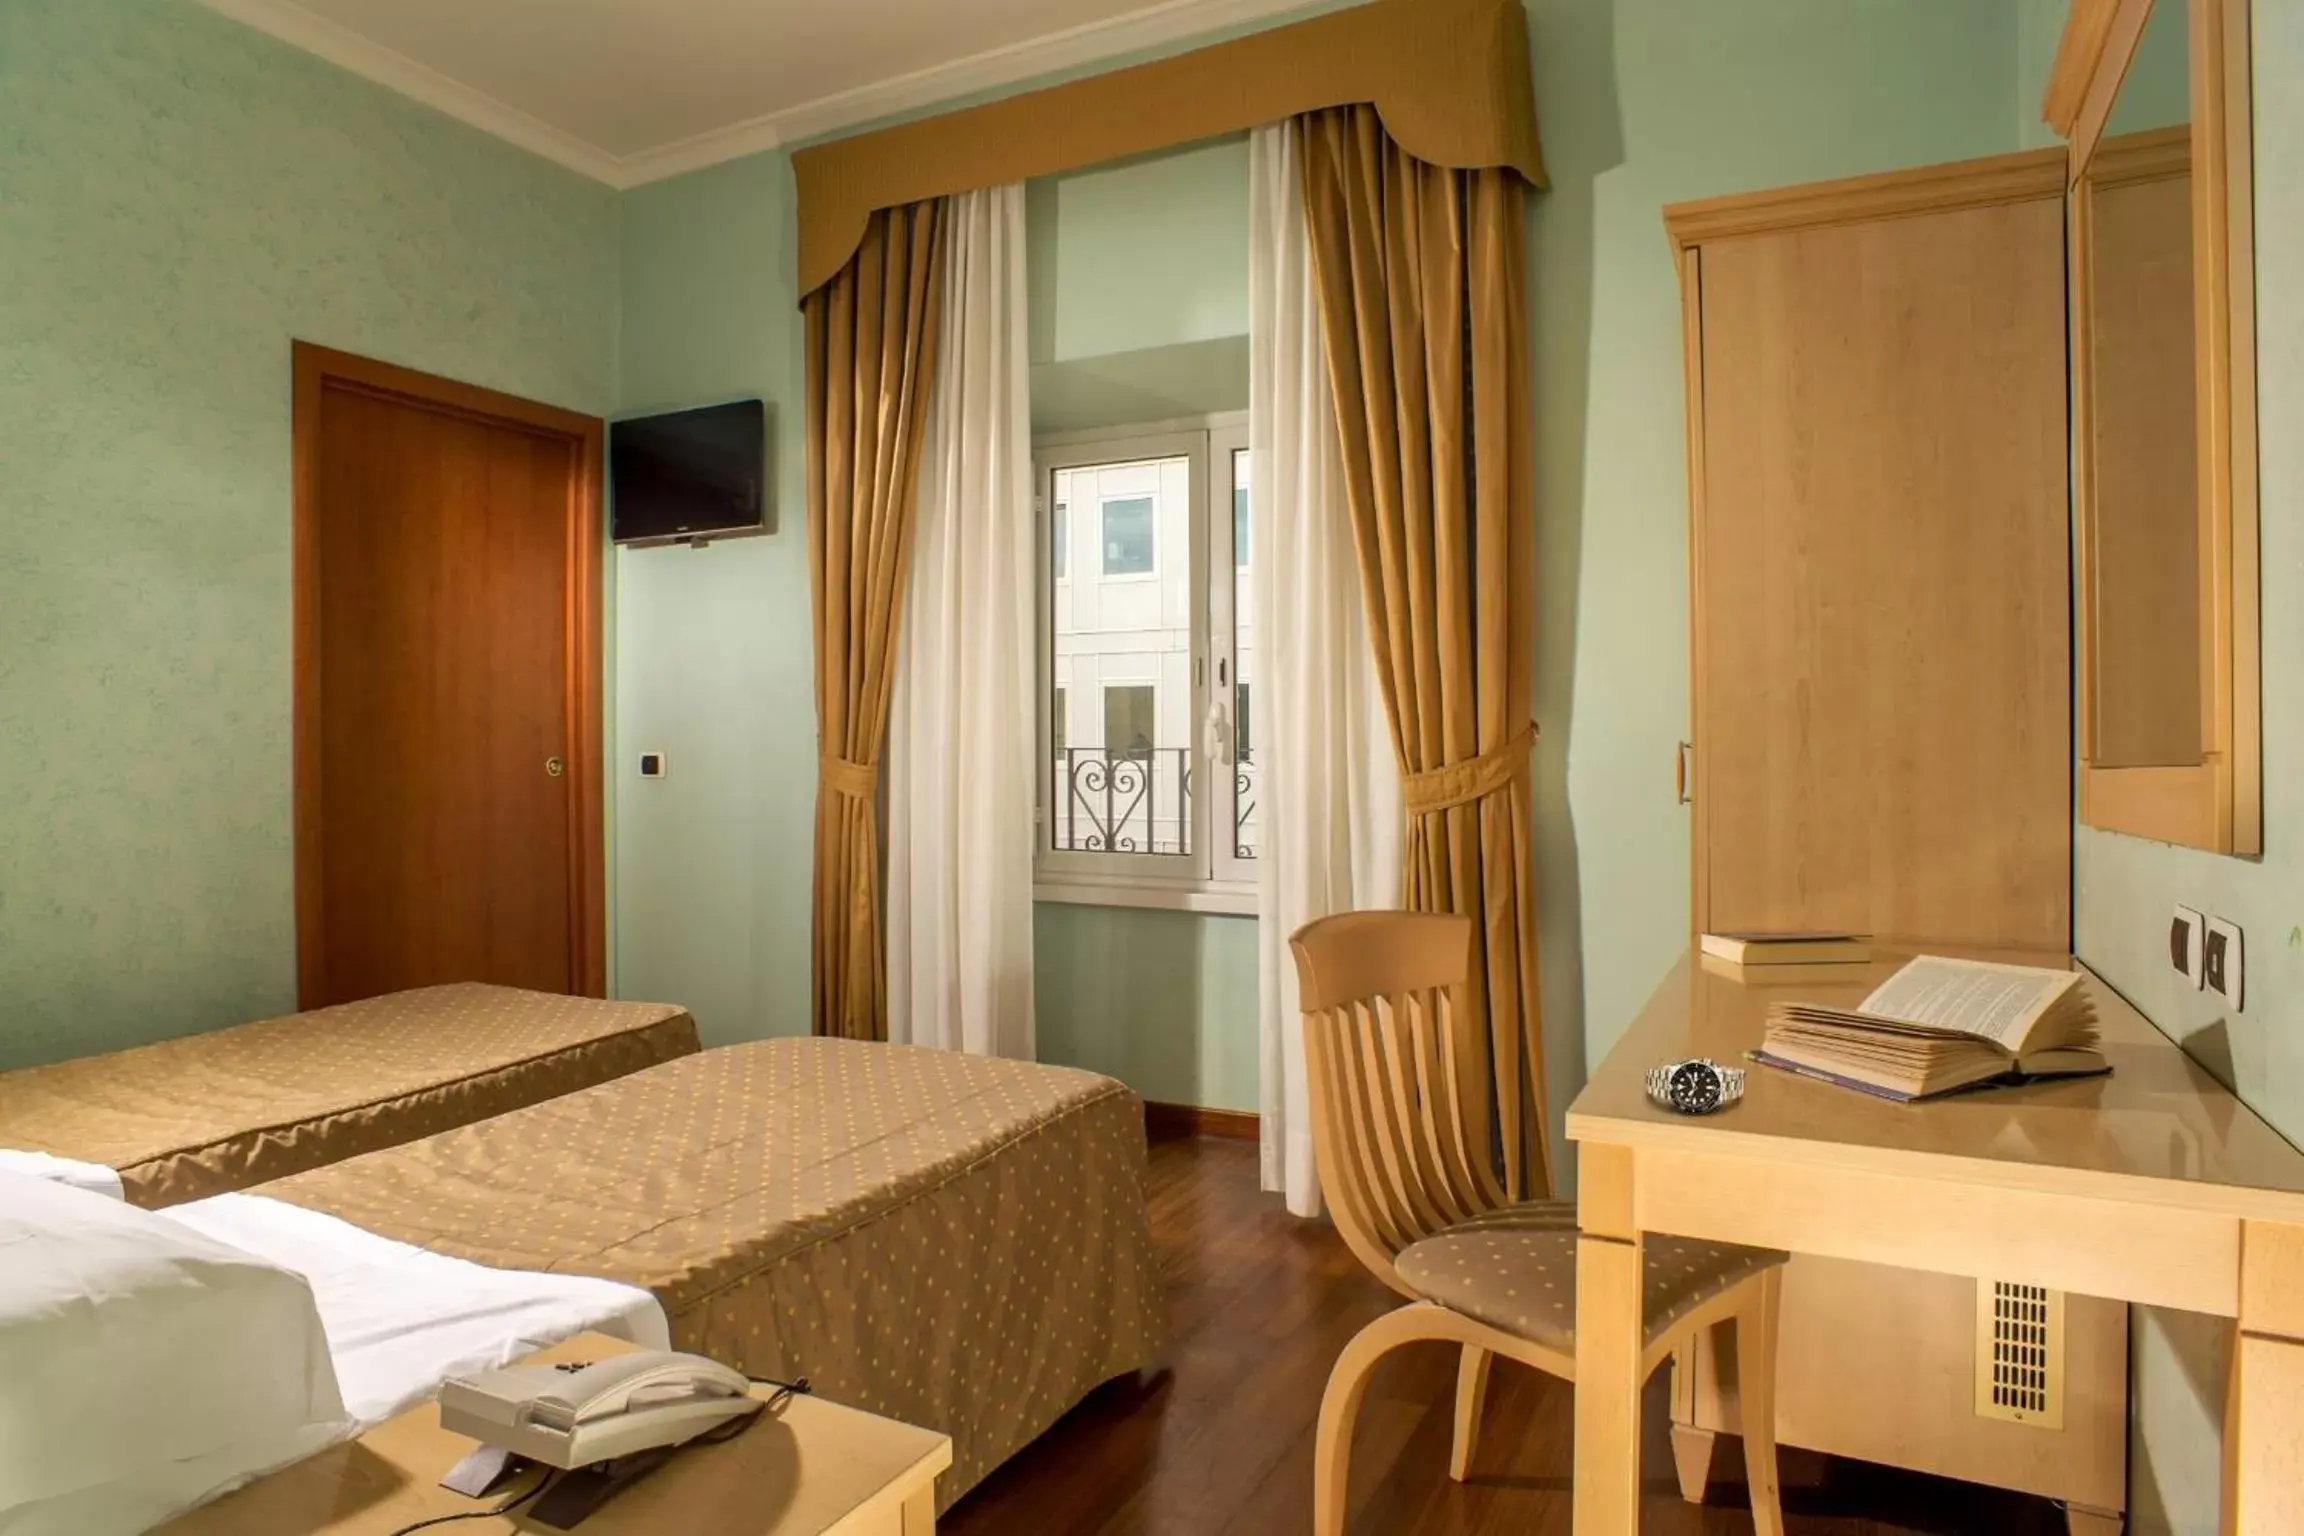 Bedroom in Hotel Piemonte